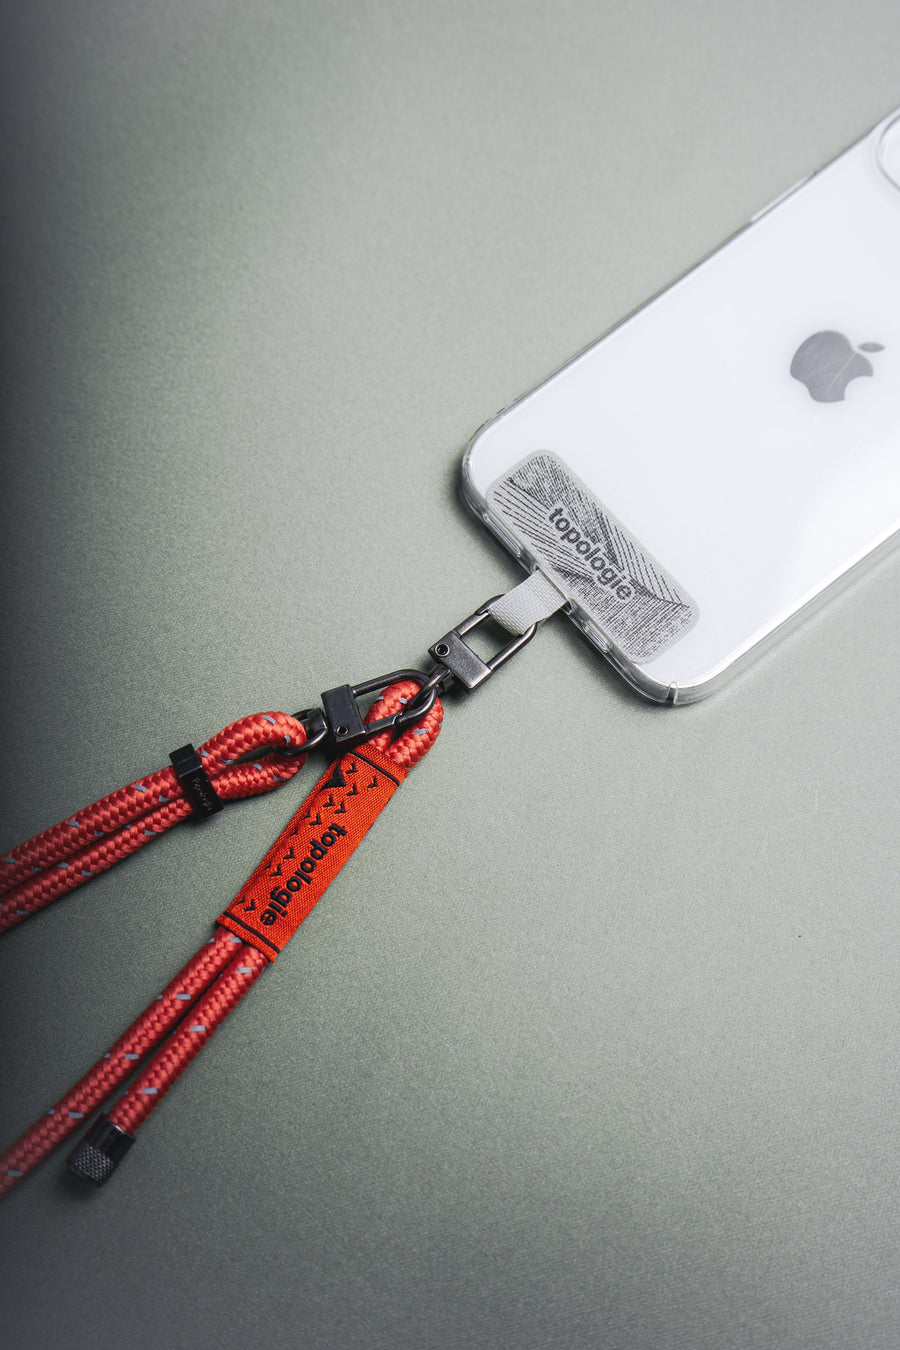 手機掛繩夾片 + 6.0mm Rope / 繩索背帶 / 橘藍